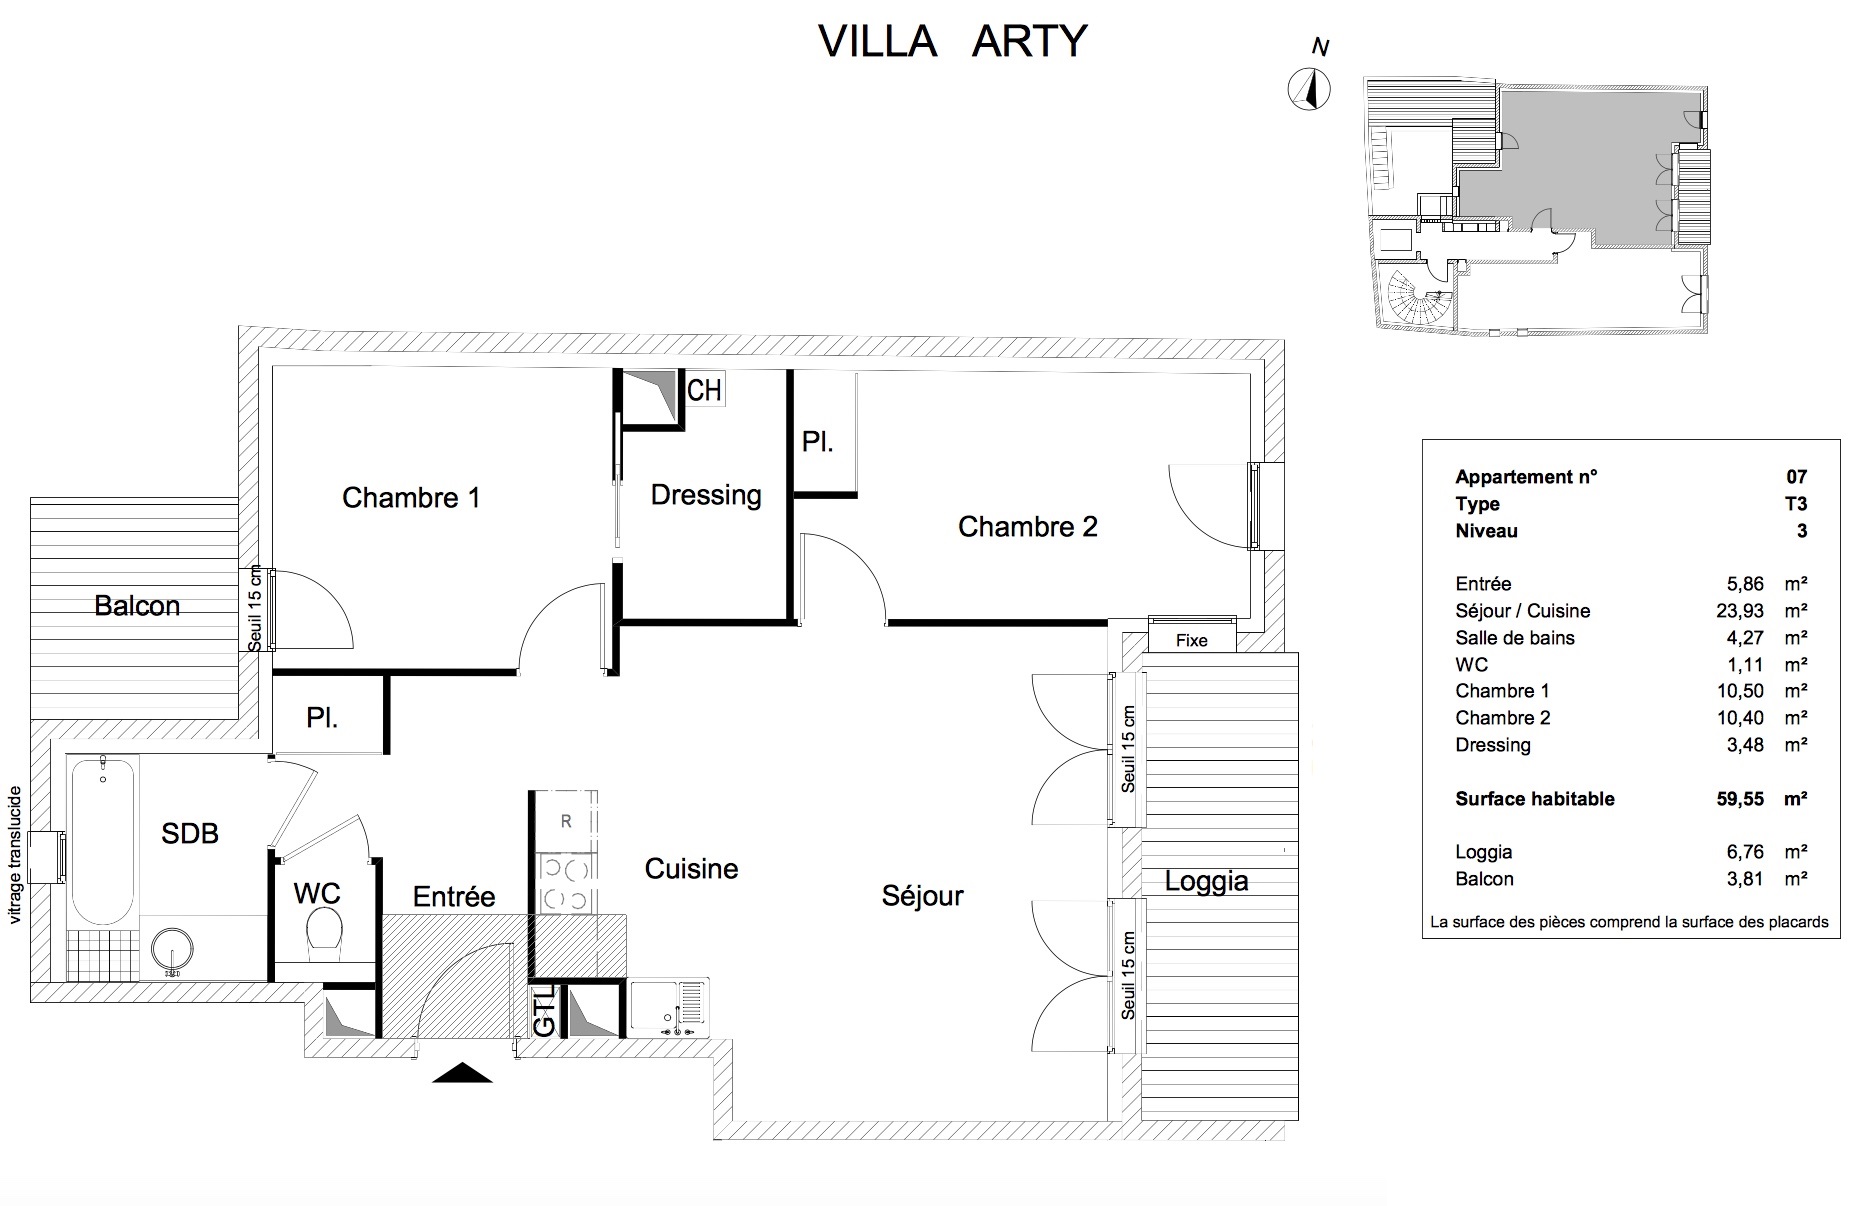 T3 - 59,55 m² - 3ème étage - Loggia 6,76 m² - Balcon 3,81 m² - VENDU